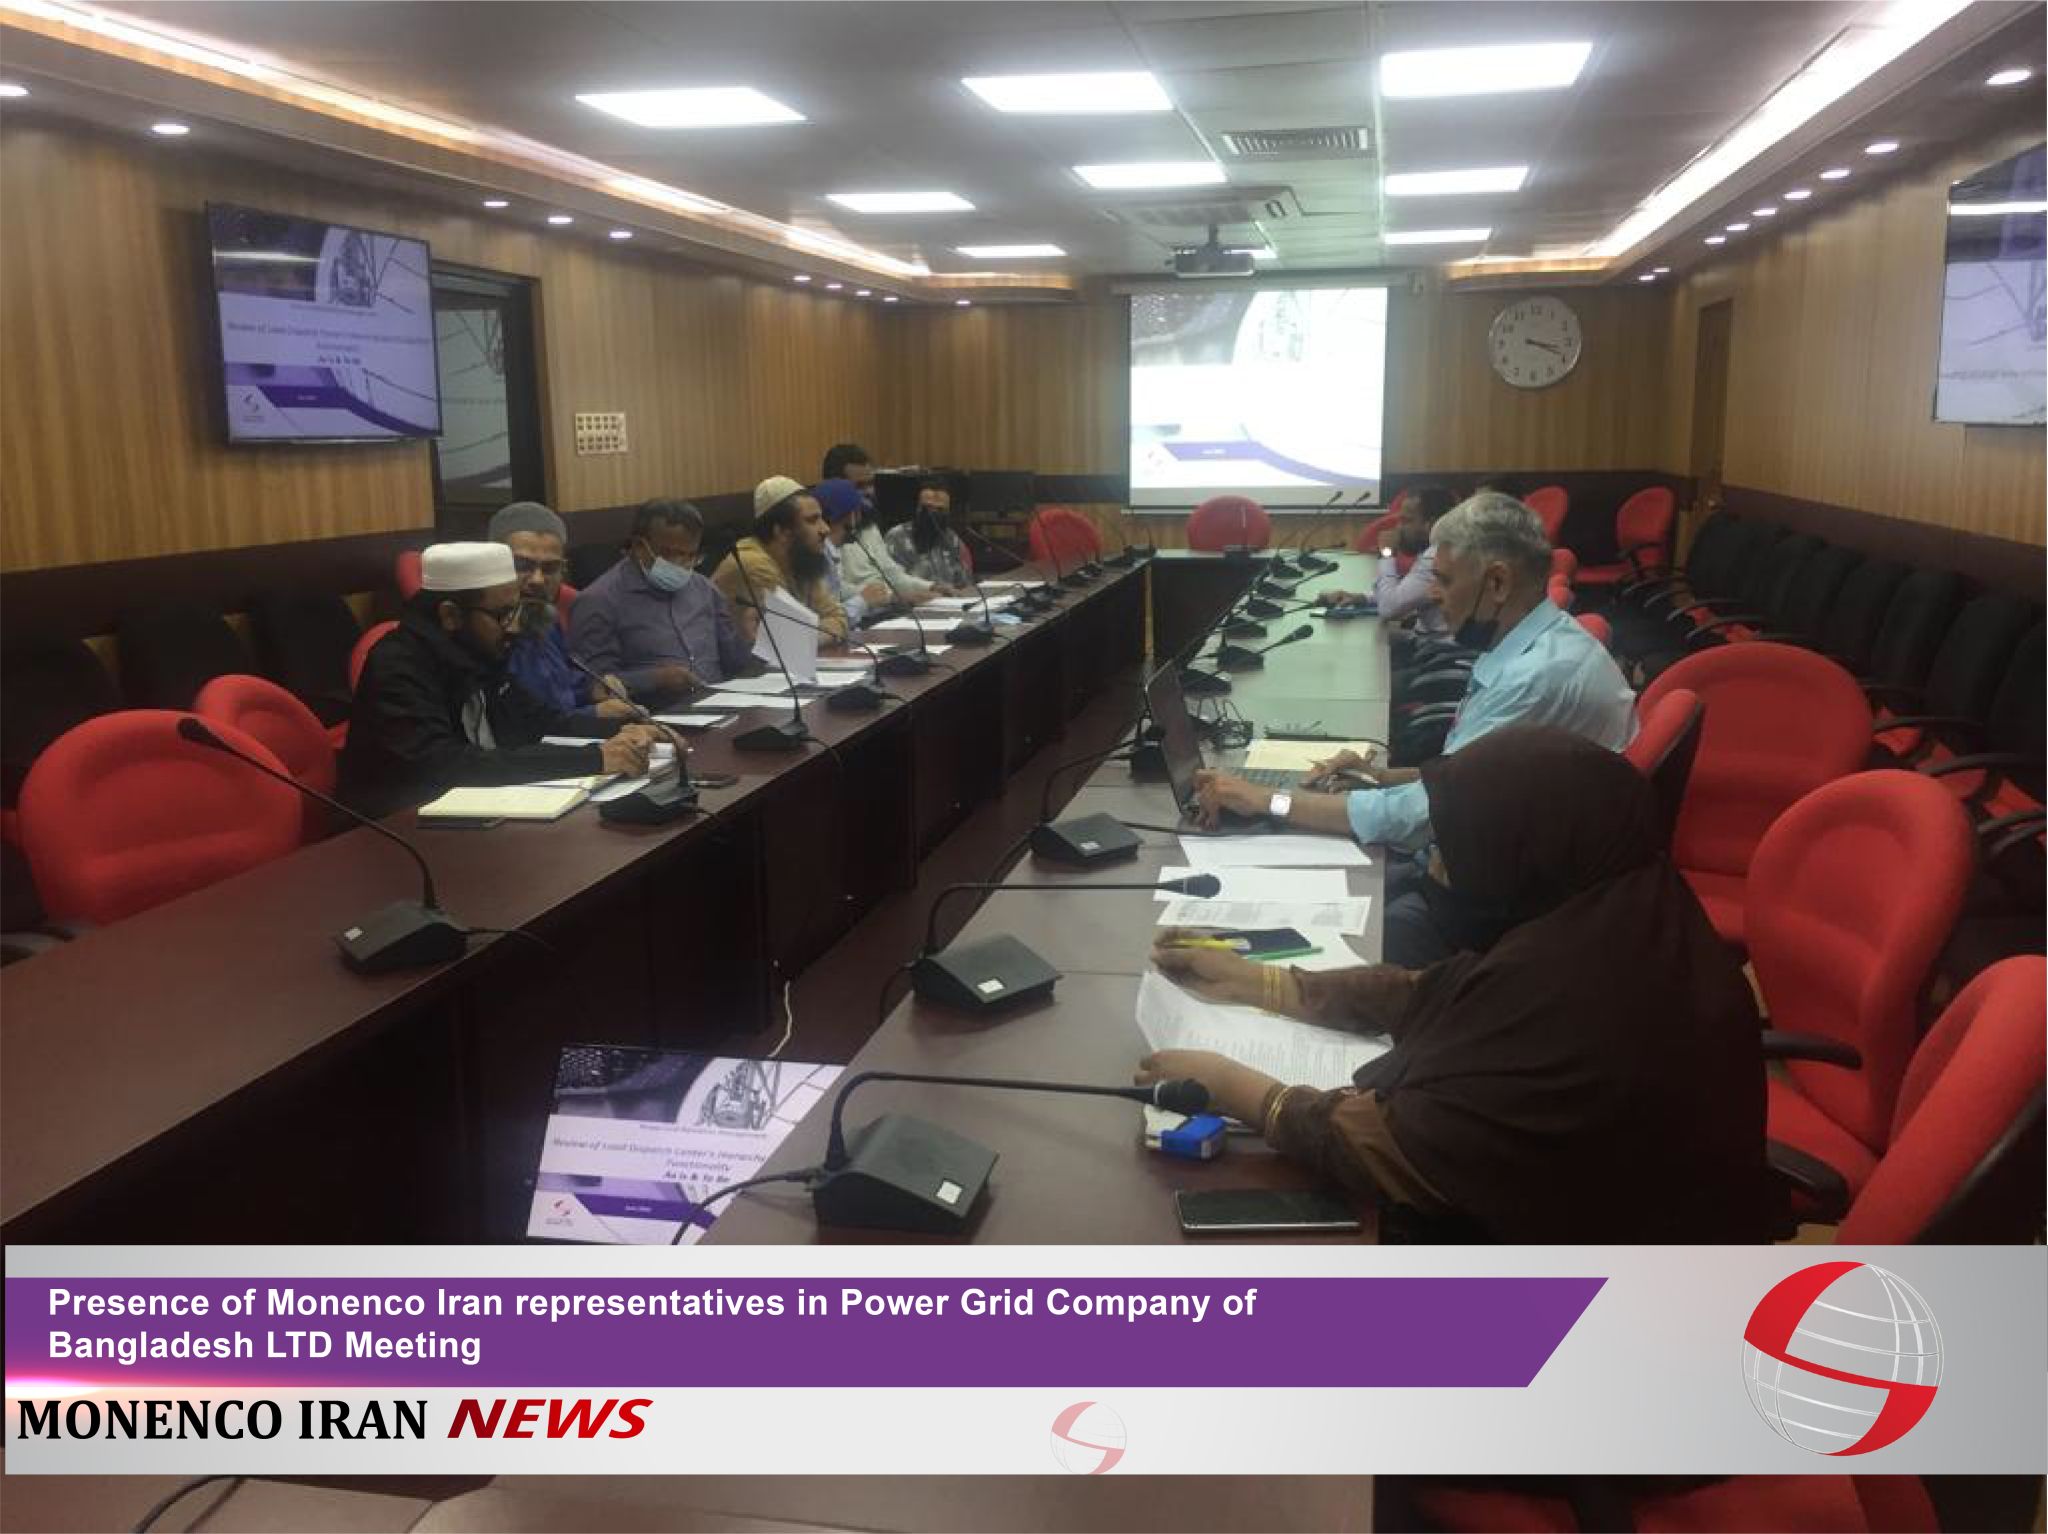 حضور نمایندگان موننکو ایران در نشست شرکت برق بنگلادش با مسئولیت محدود